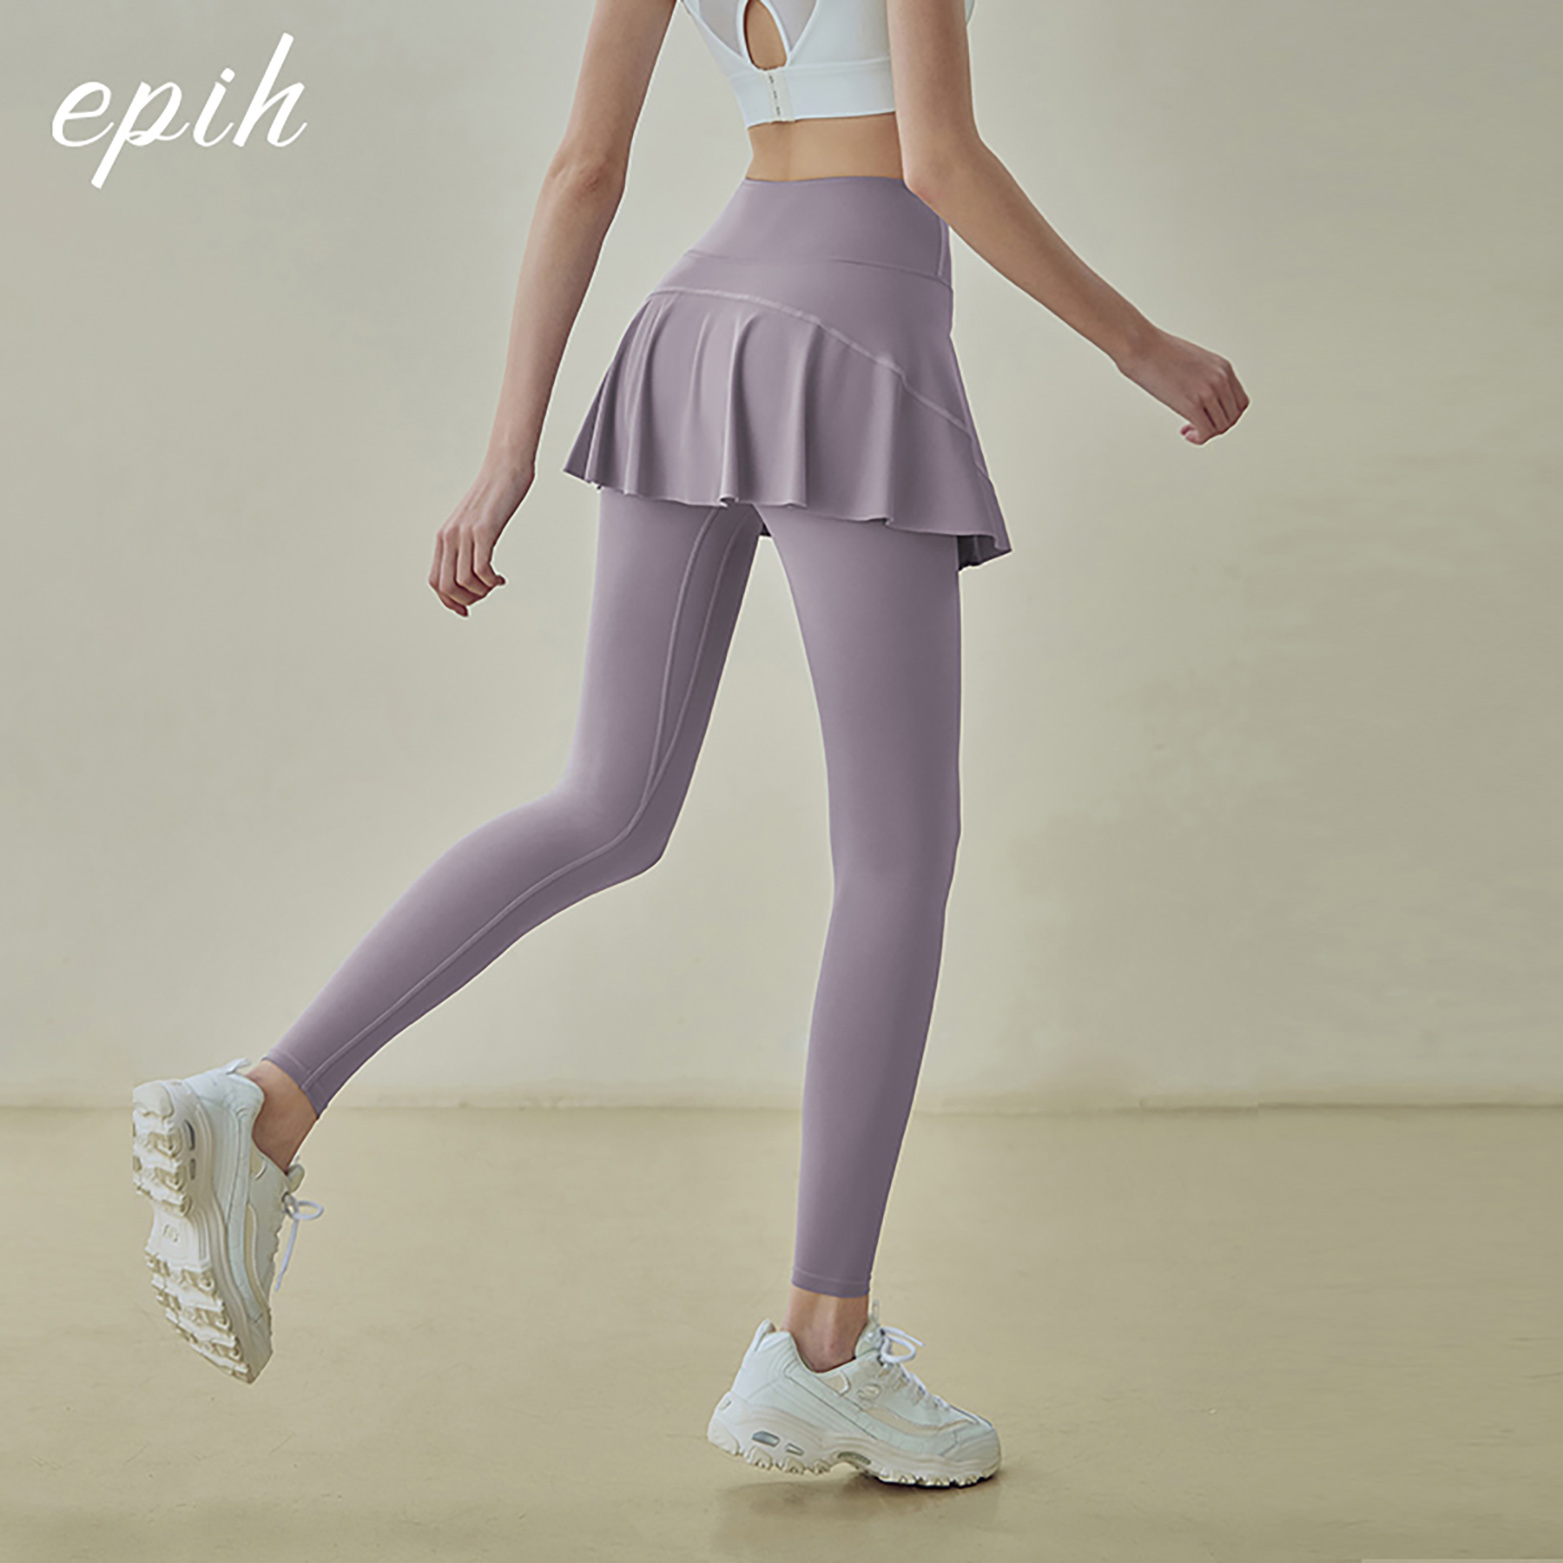 EPIH瑜伽裙裤女高腰提臀跑步健身裤运动服长裤裙摆外穿假两件裤裙 - 图2